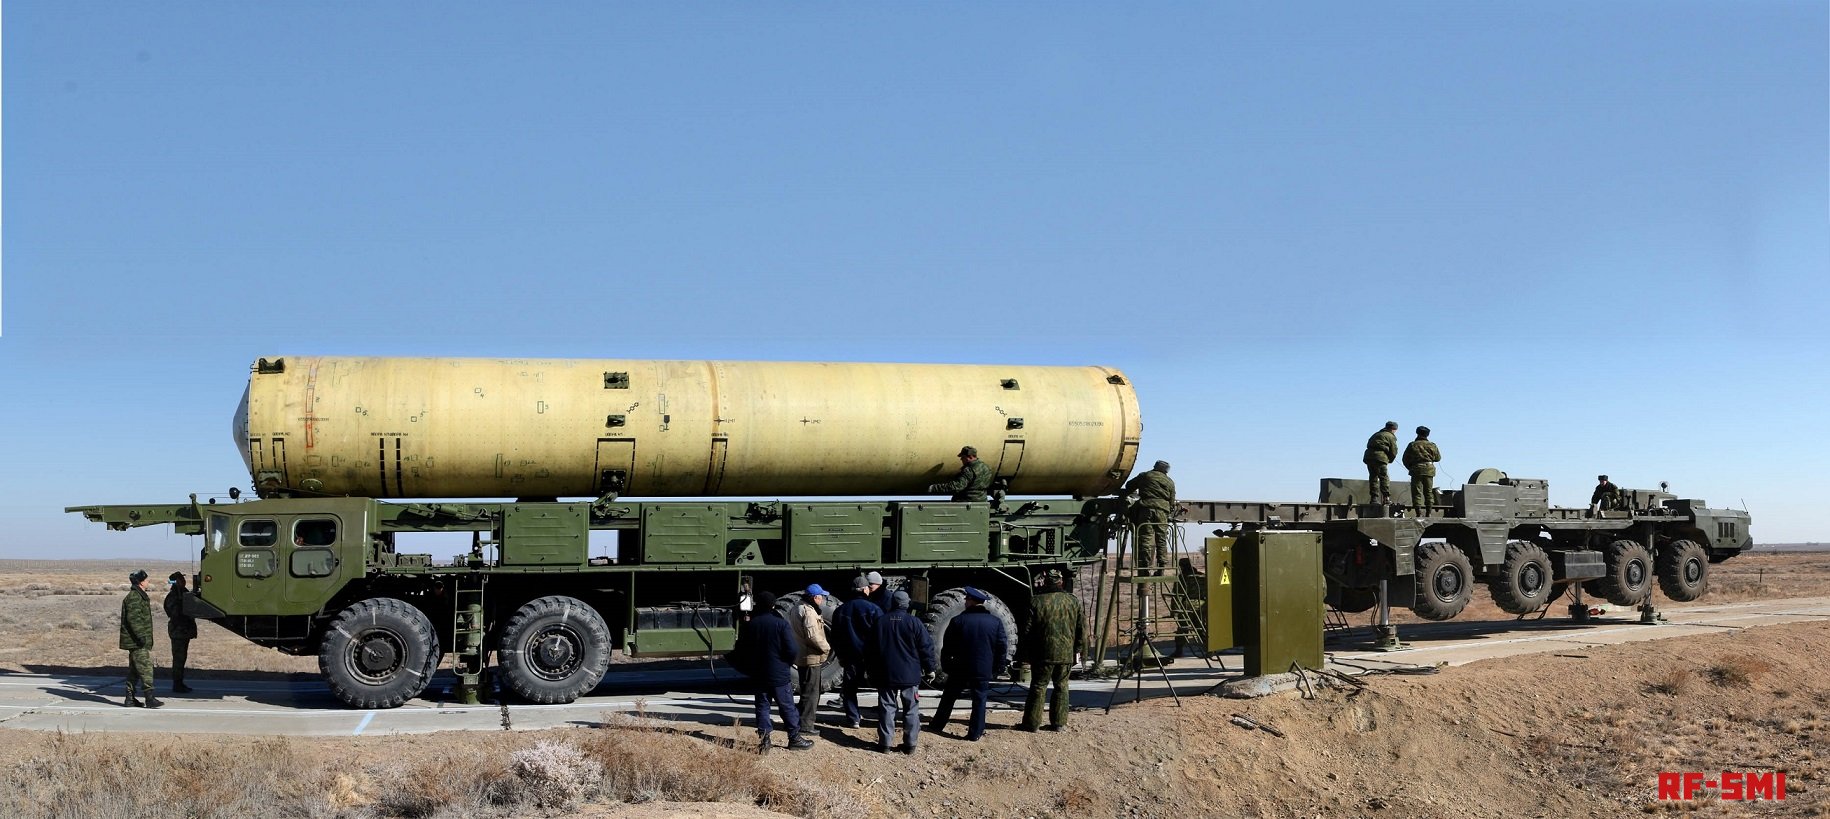 СМИ США сообщили о новом испытании российской «противоспутниковой» ракеты